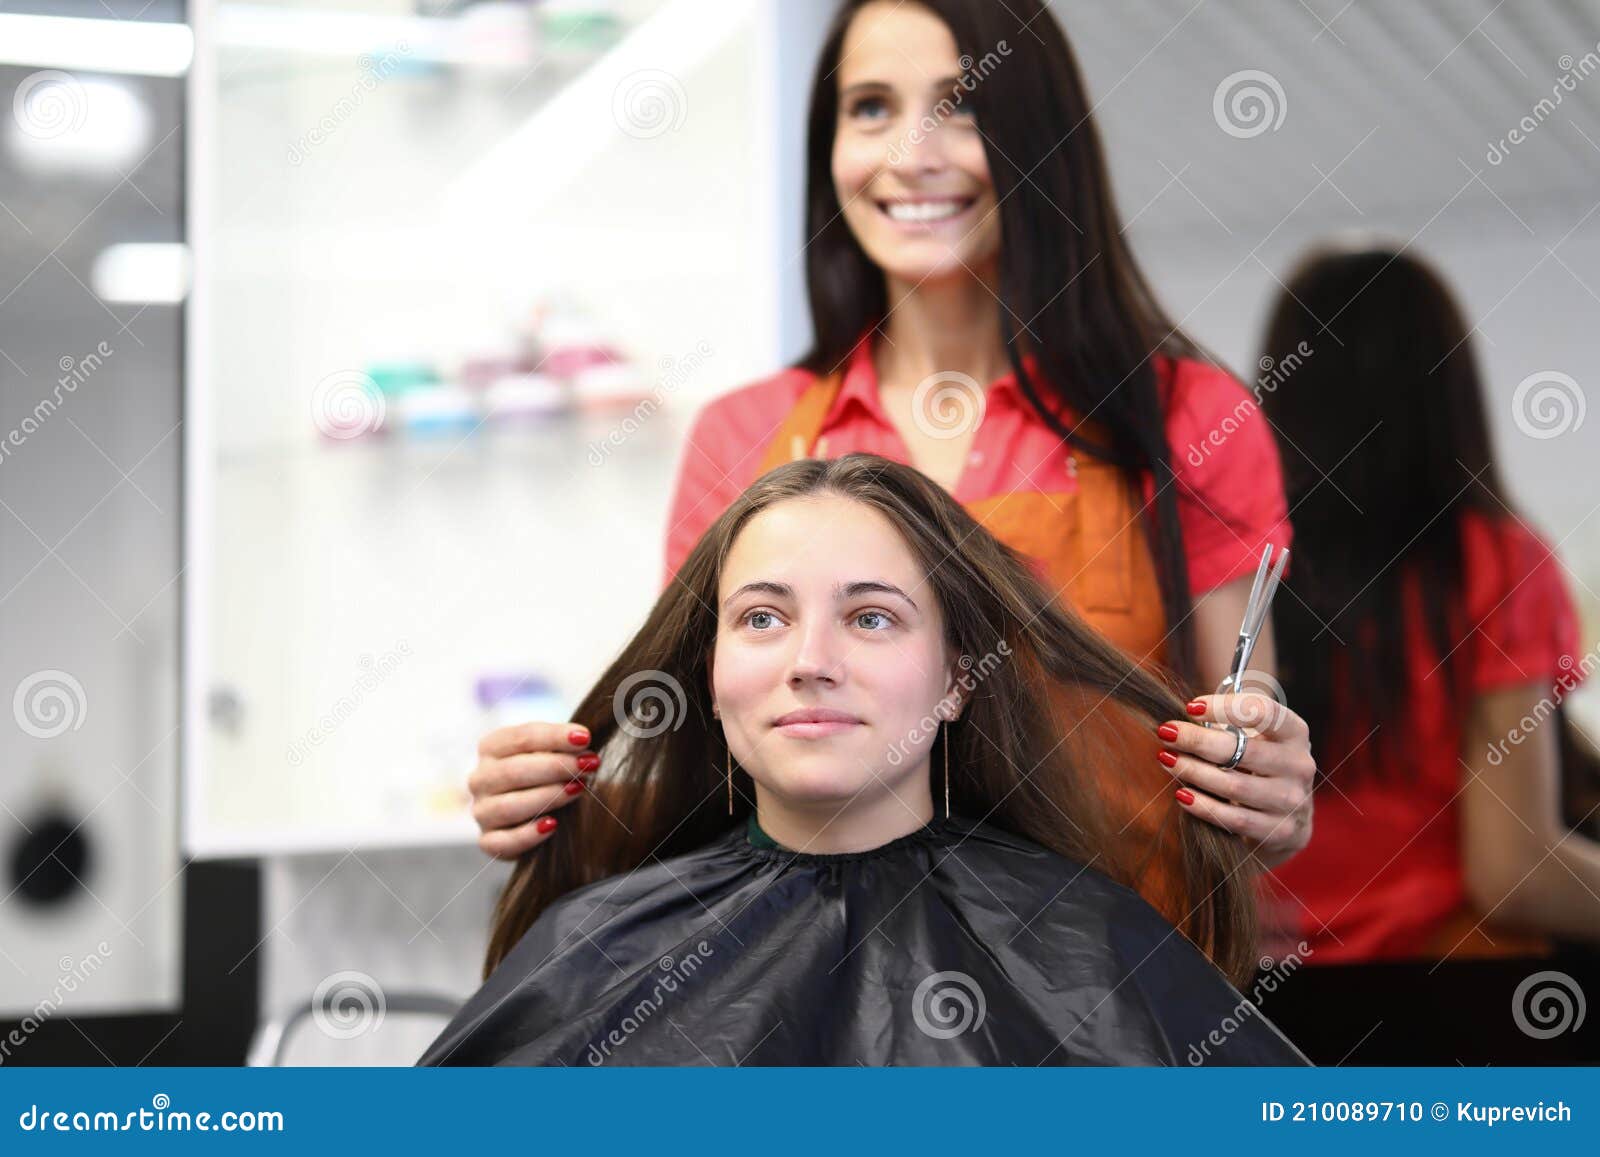 Mestre cabeleireiro faz penteado feminino com secador de cabelo e produtos  para o cabelo